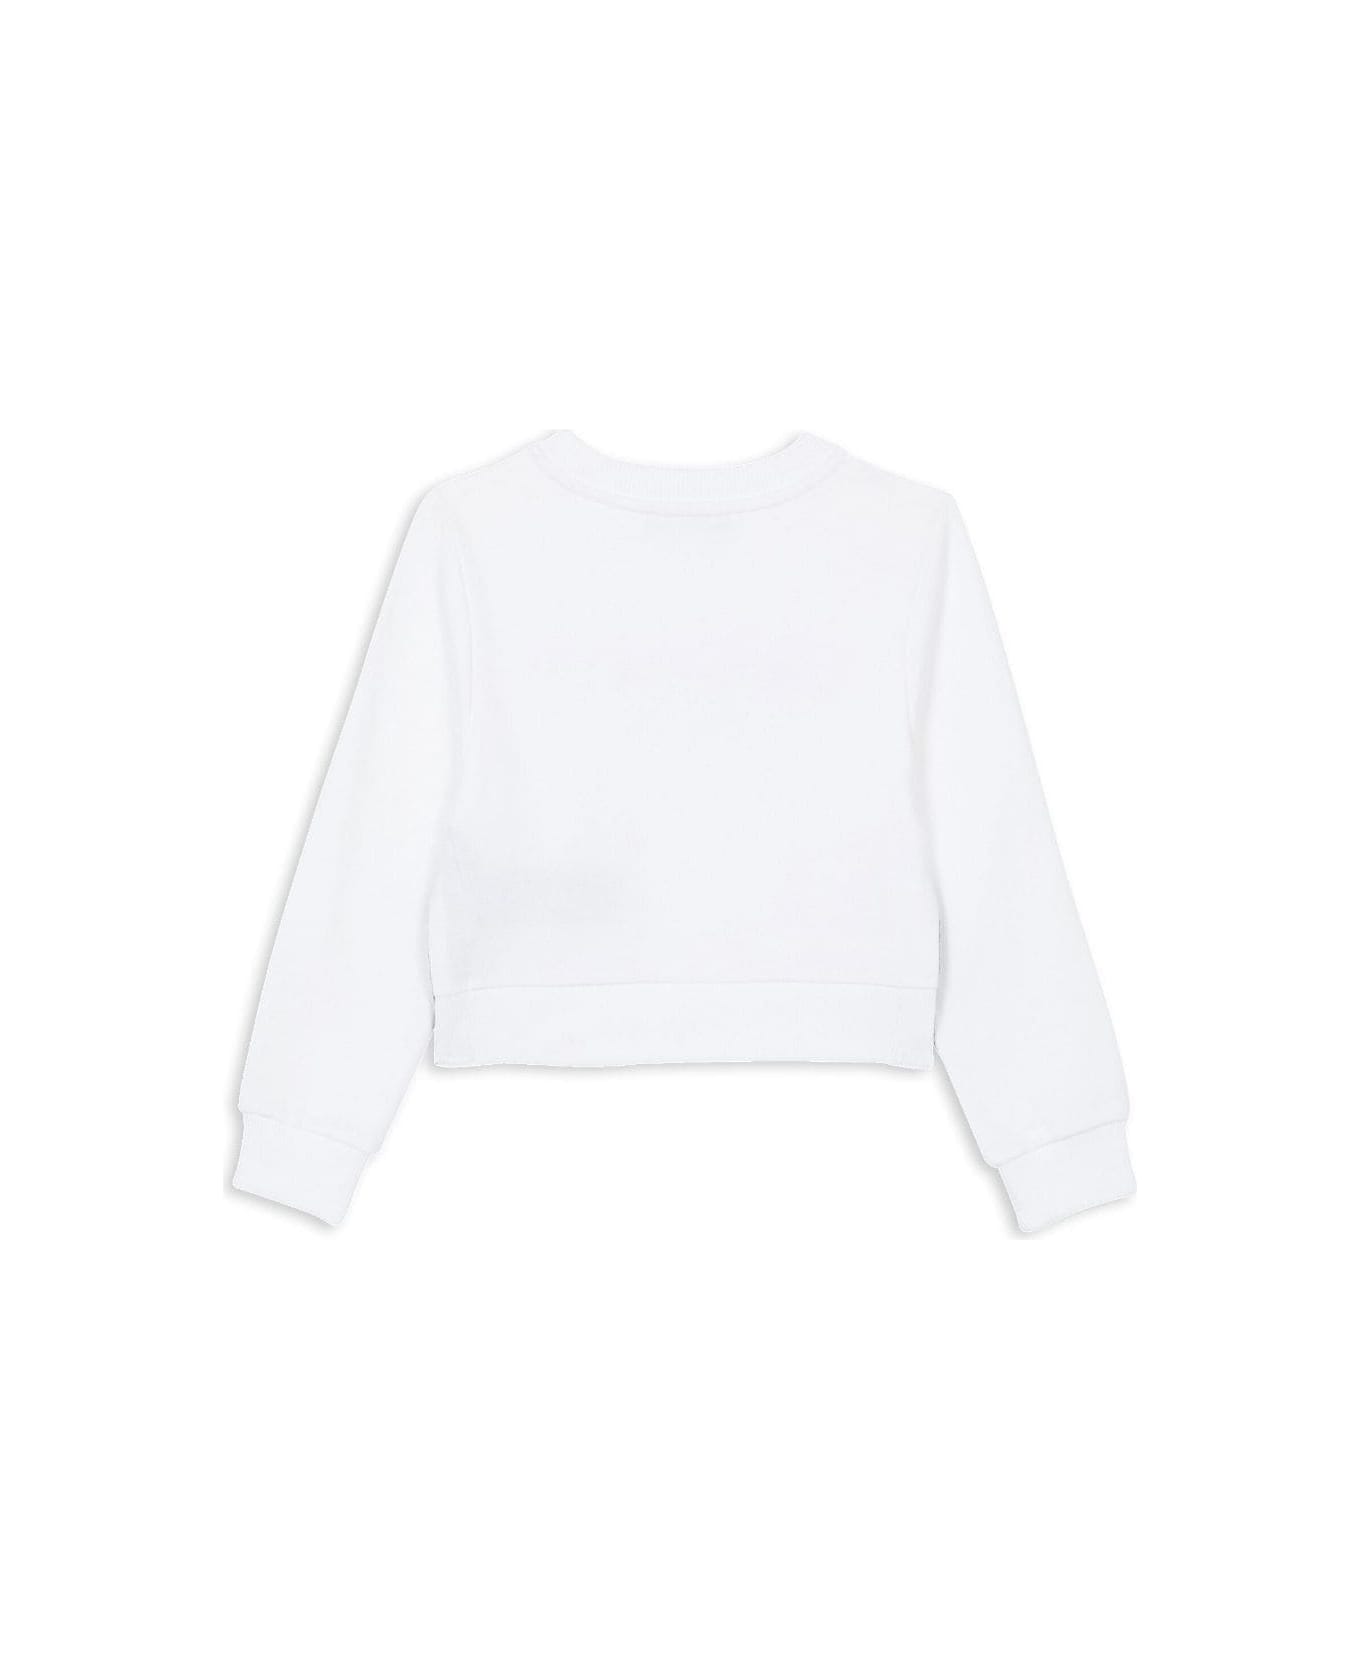 Balmain Sweatshirt With brigade - White